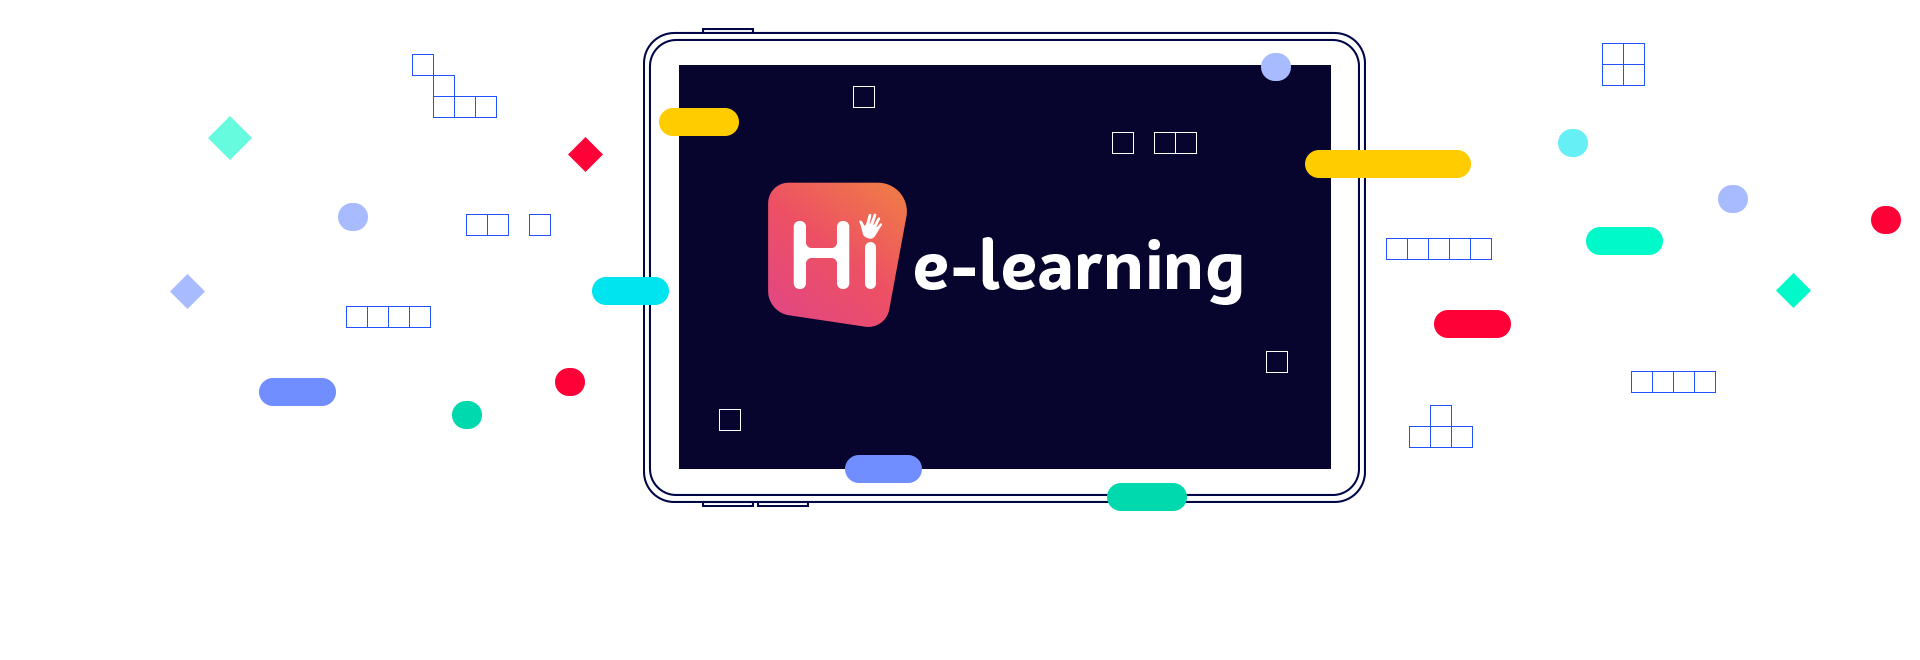 hi e-learning tablet illustration